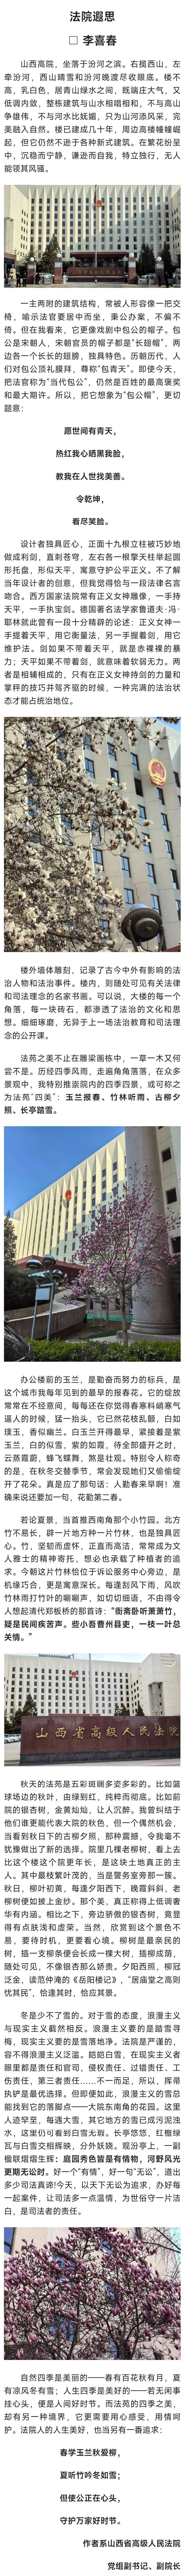 山西省人民法院图片